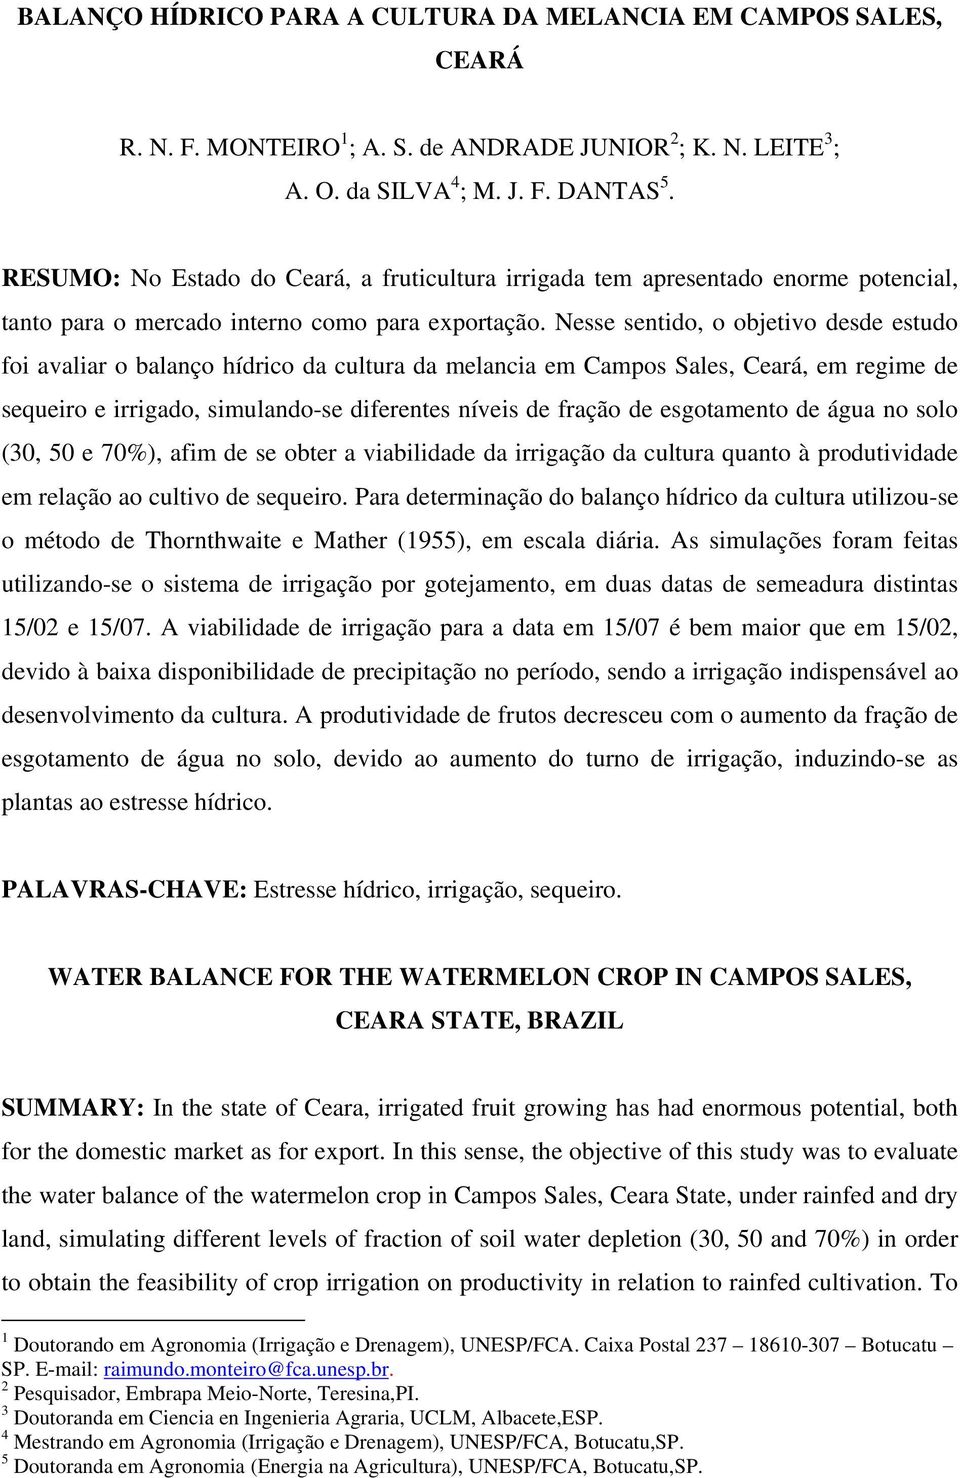 Nesse sentido, o objetivo desde estudo foi avaliar o balanço hídrico da cultura da melancia em Campos Sales, Ceará, em regime de sequeiro e irrigado, simulando-se diferentes níveis de fração de